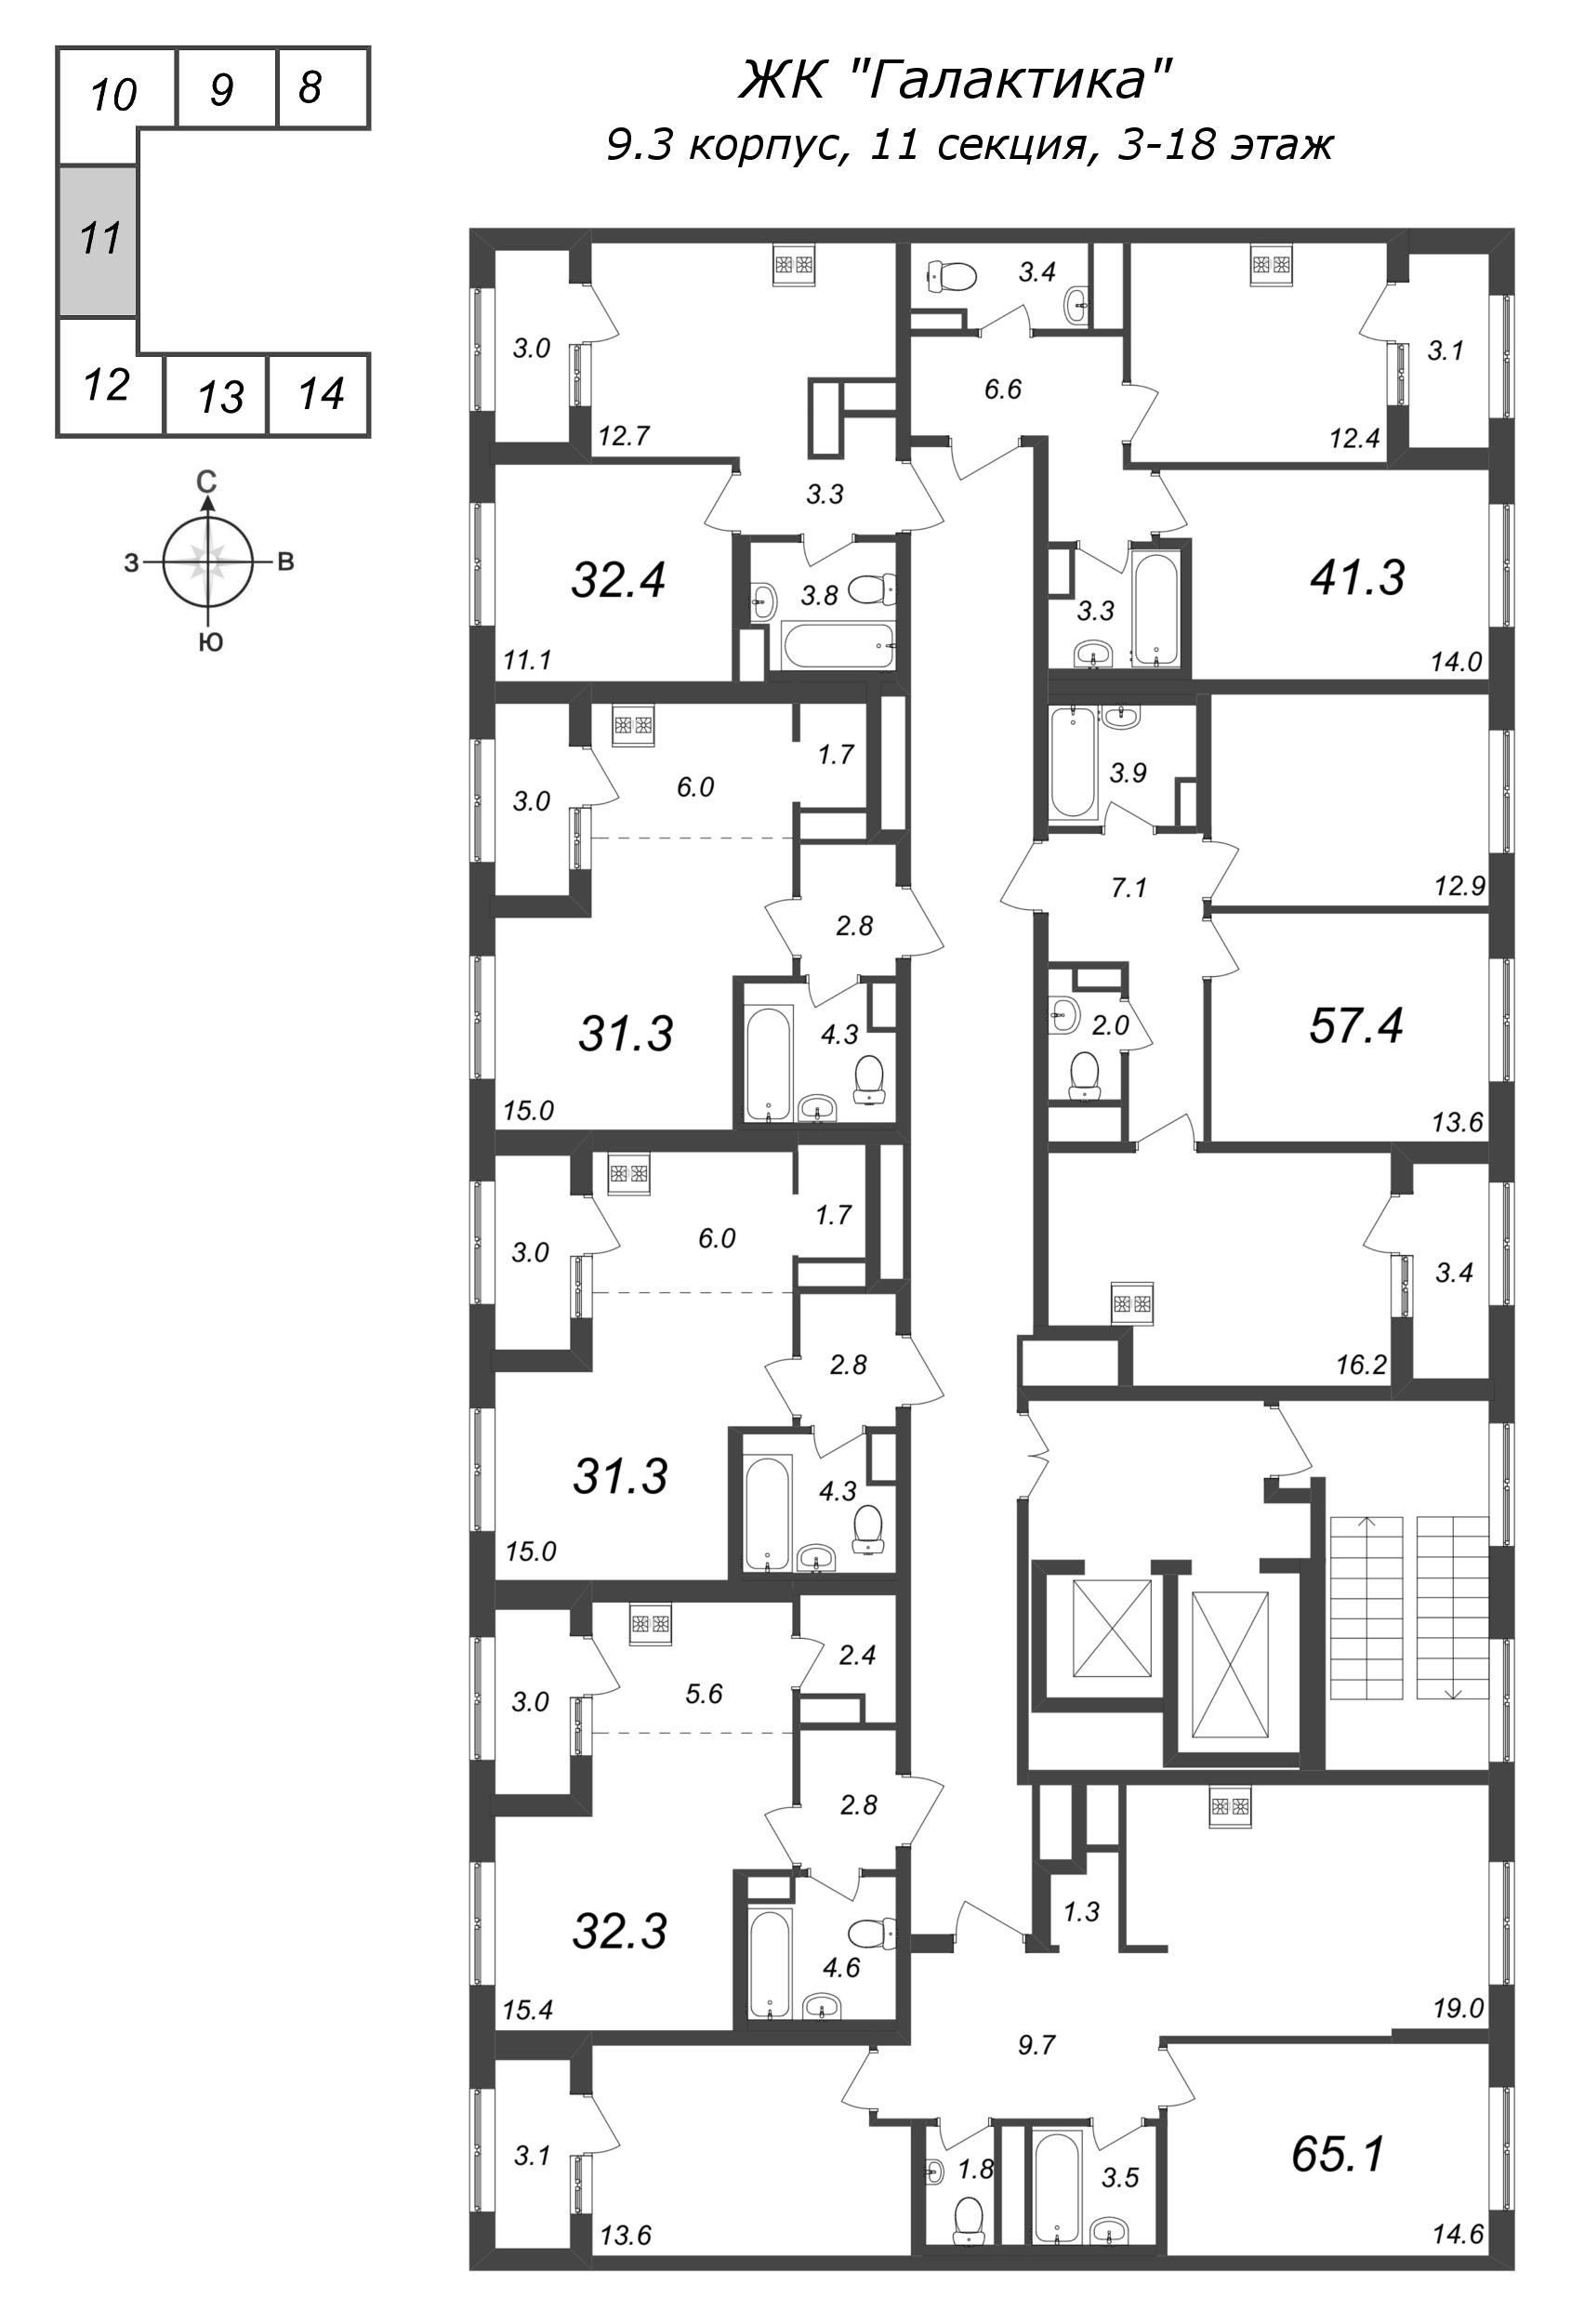 Квартира-студия, 32.2 м² в ЖК "Галактика" - планировка этажа